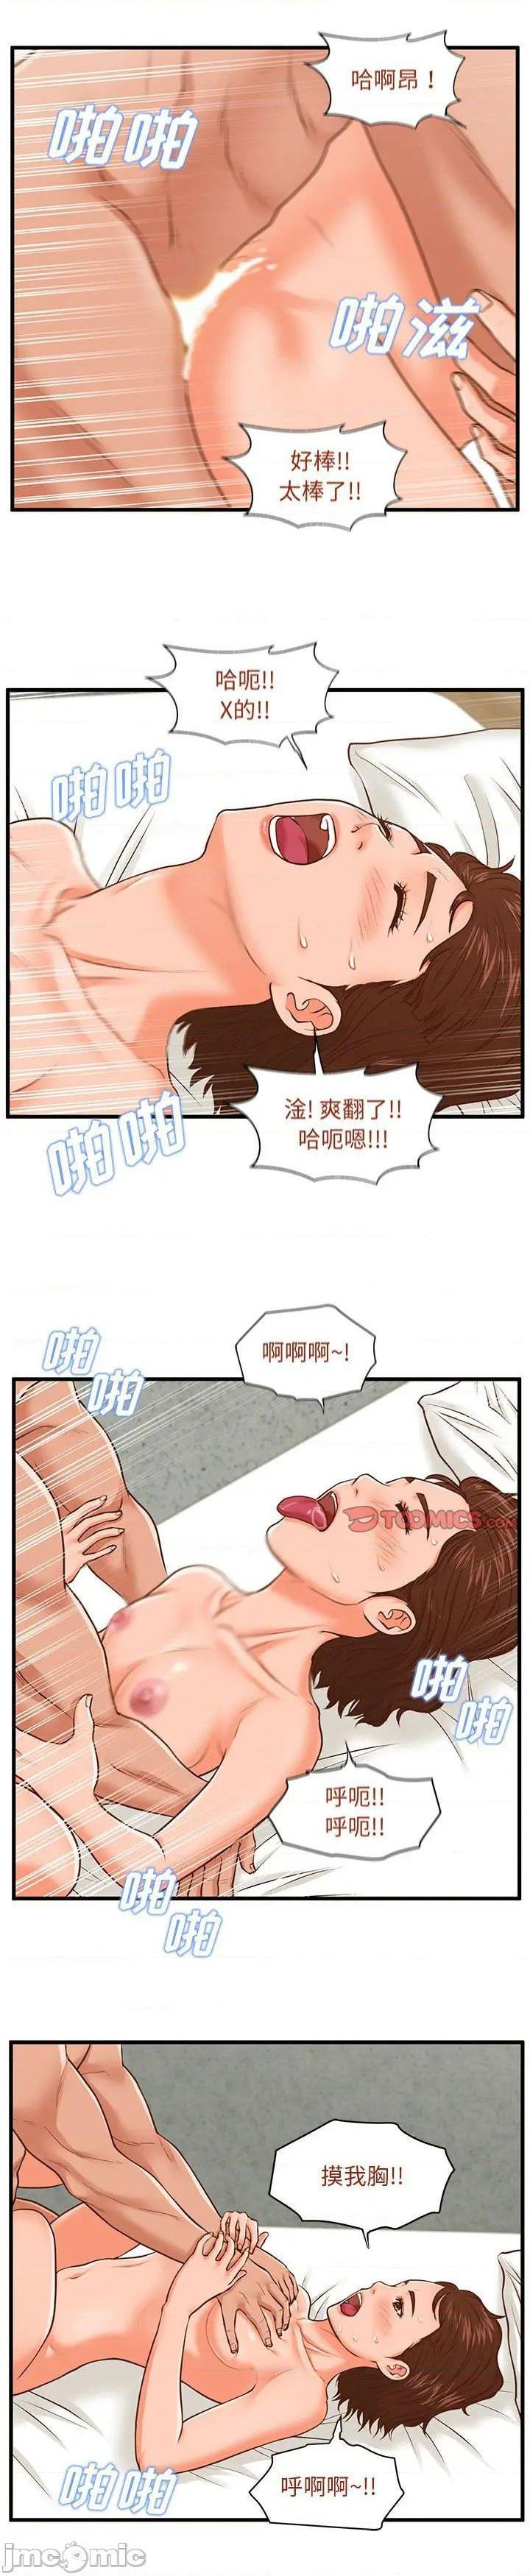 《诚徵女房客(甜蜜合租)》漫画 第11话